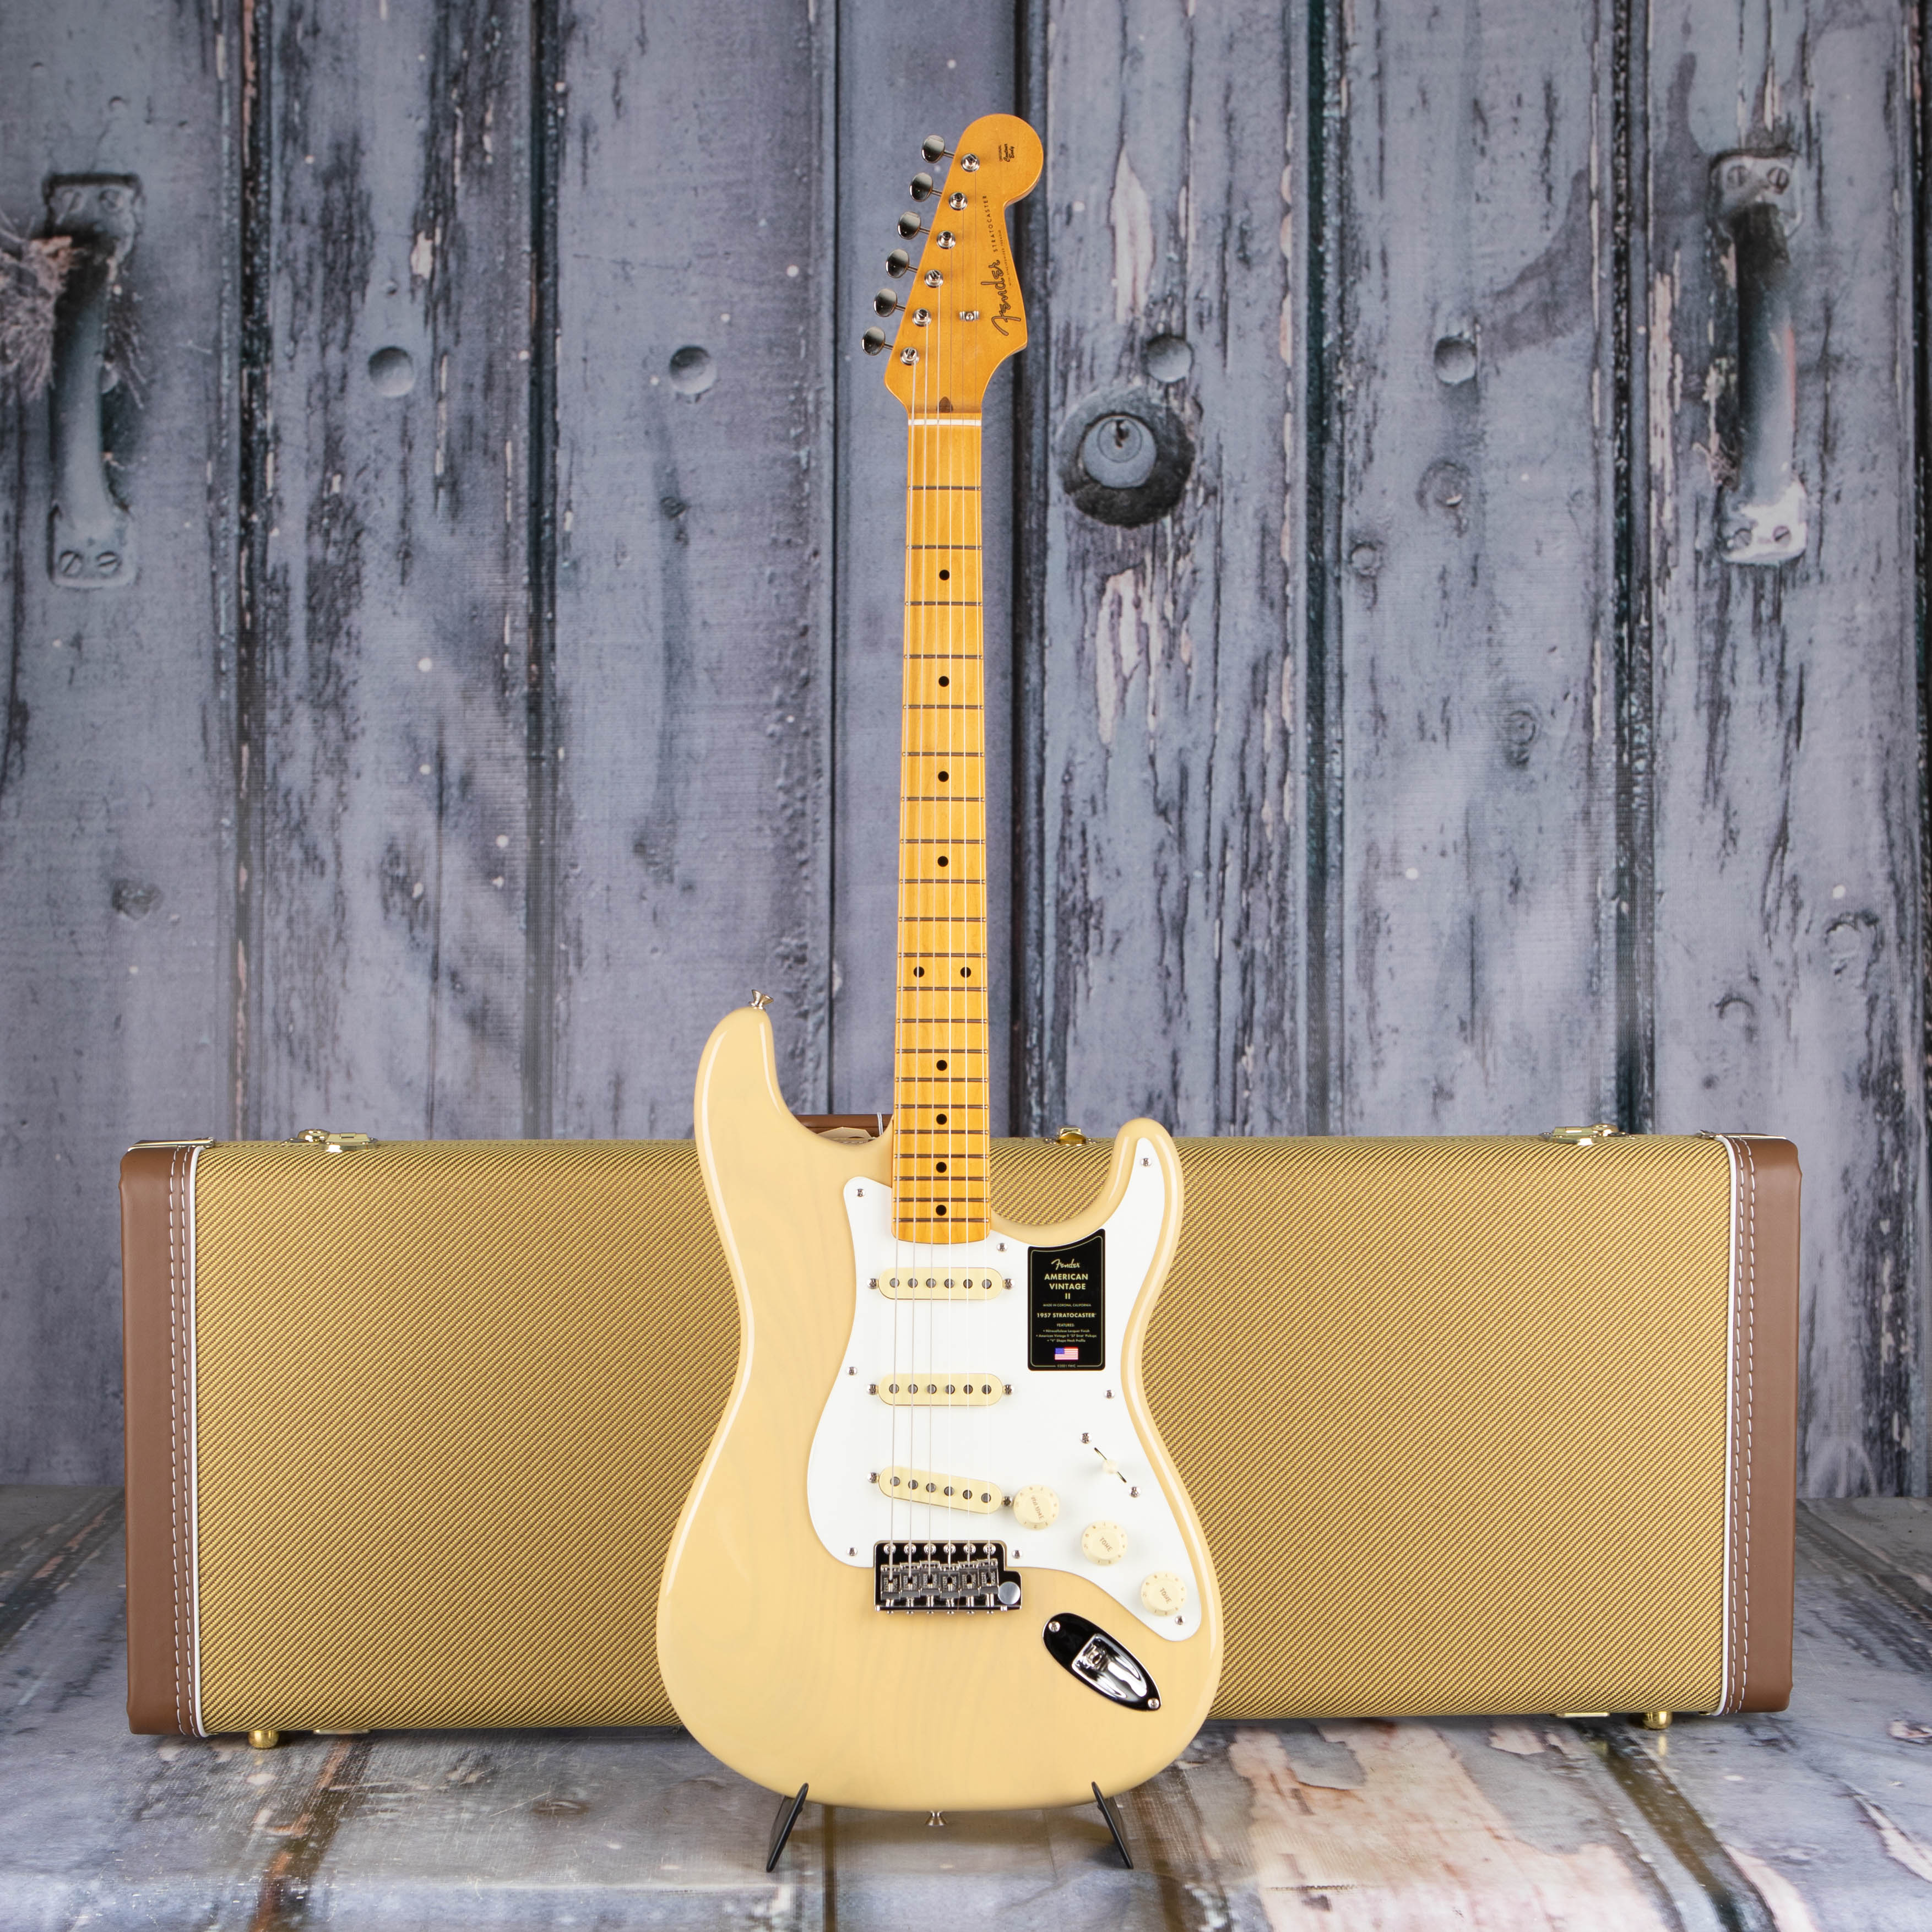 Fender American Vintage II 1957 Stratocaster Electric Guitar, Vintage Blonde, case